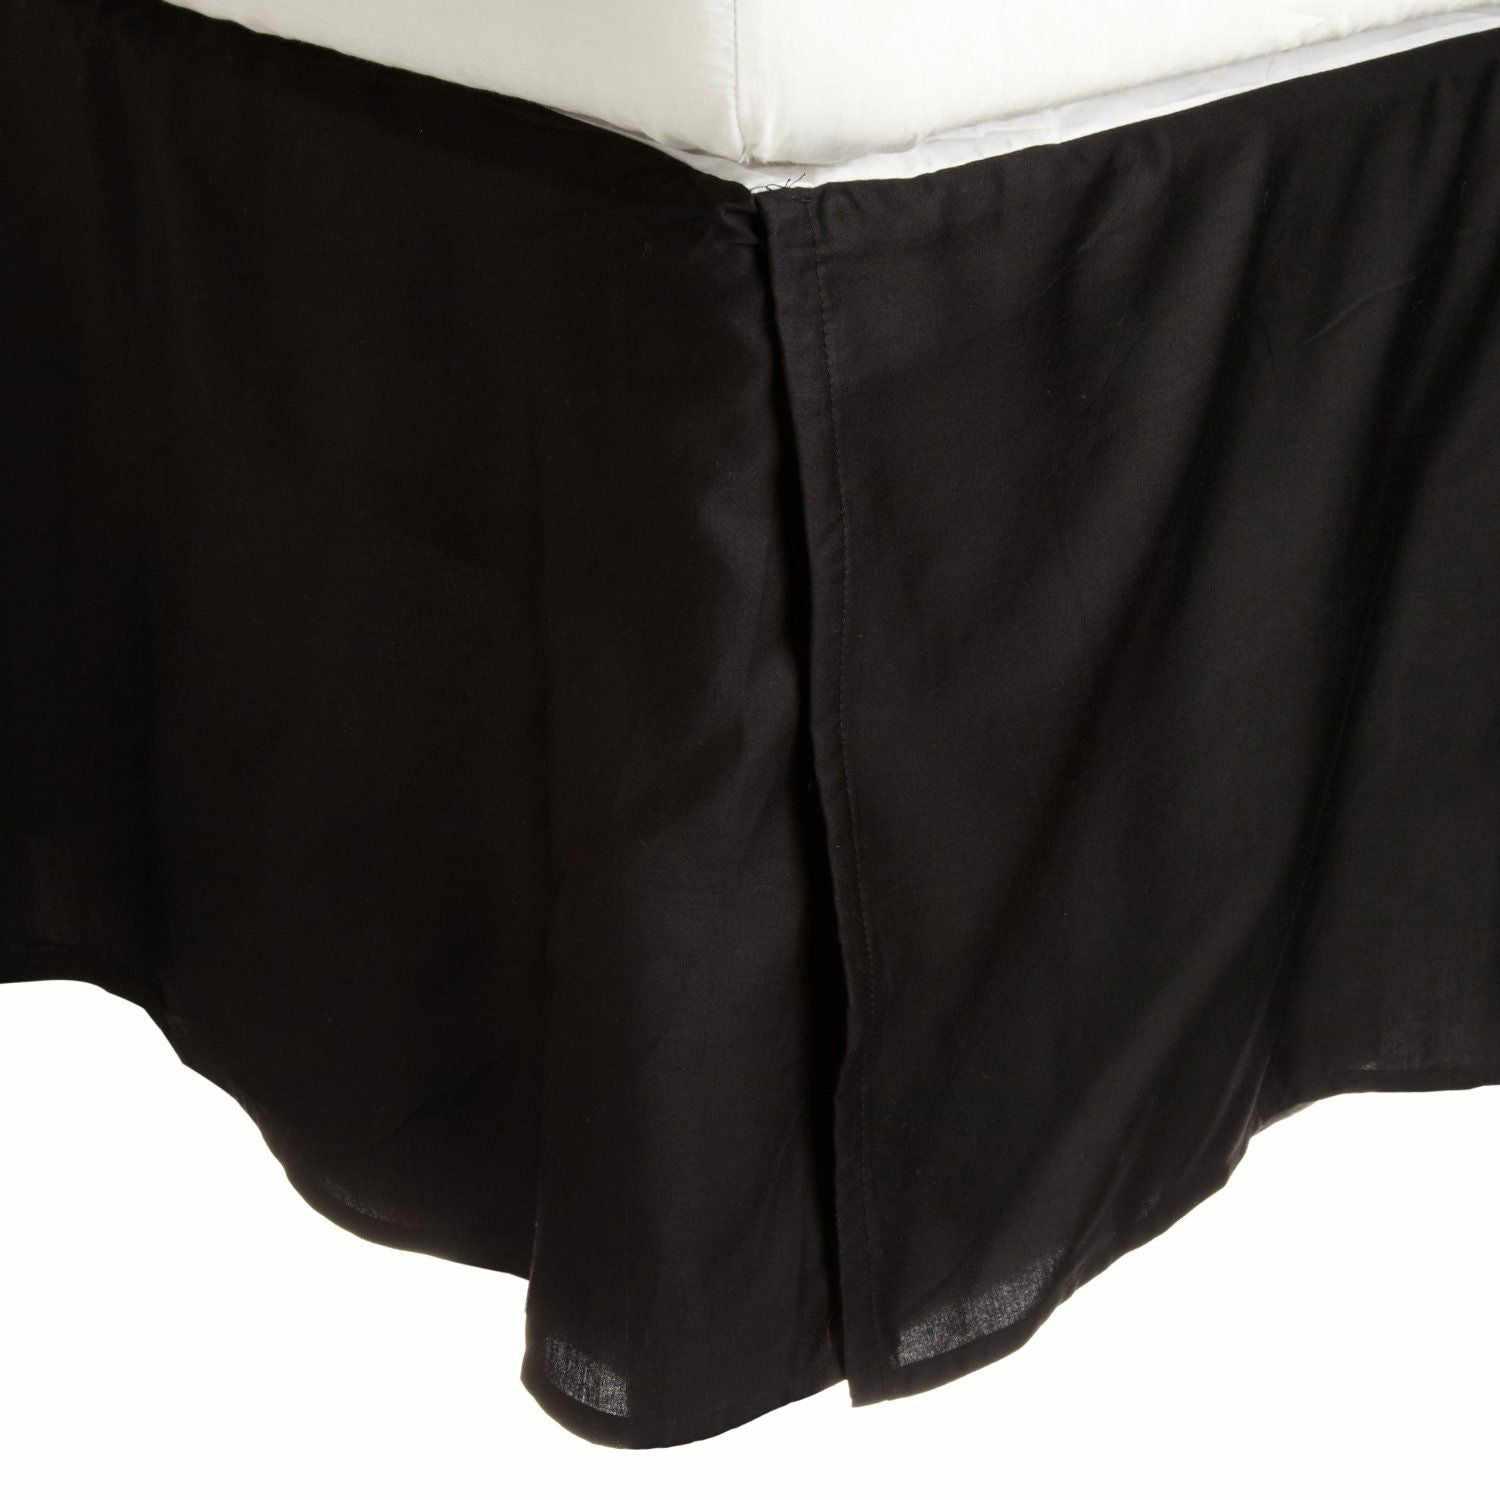  Solid Microfiber Wrinkle Free 15 Inch Drop Bed Skirt - Black